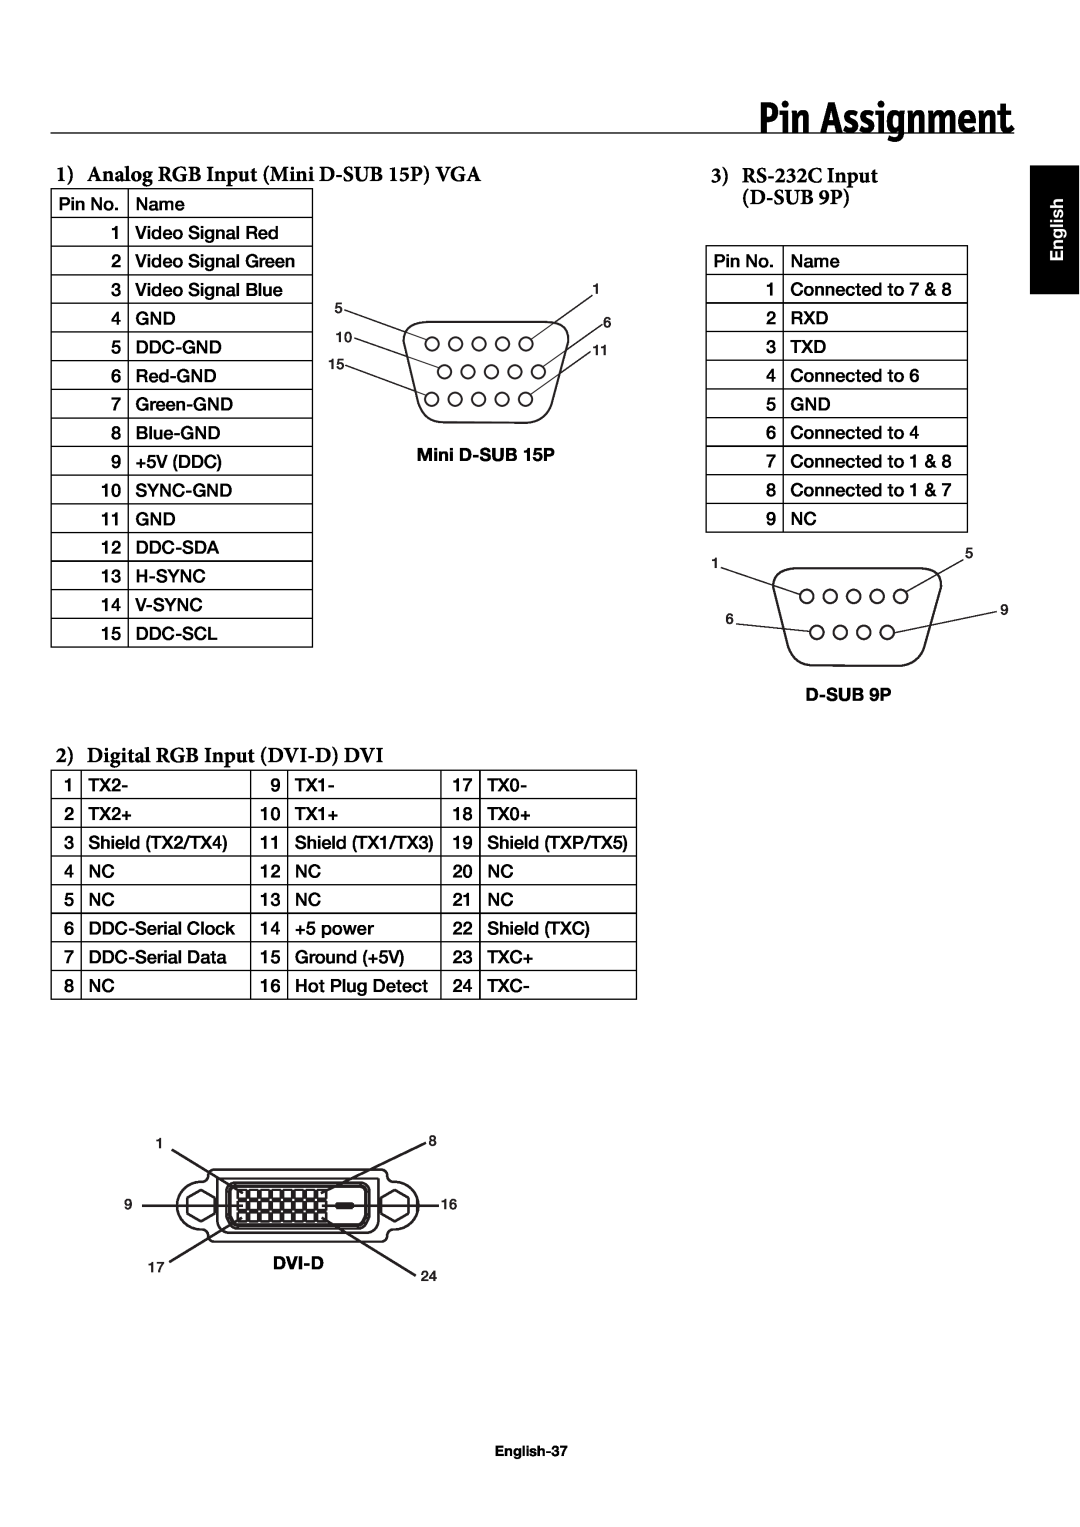 NEC 60XC10 Pin Assignment, Analog RGB Input Mini D-SUB 15P VGA, RS-232C Input, D-SUB 9P, Digital RGB Input DVI-D DVI 